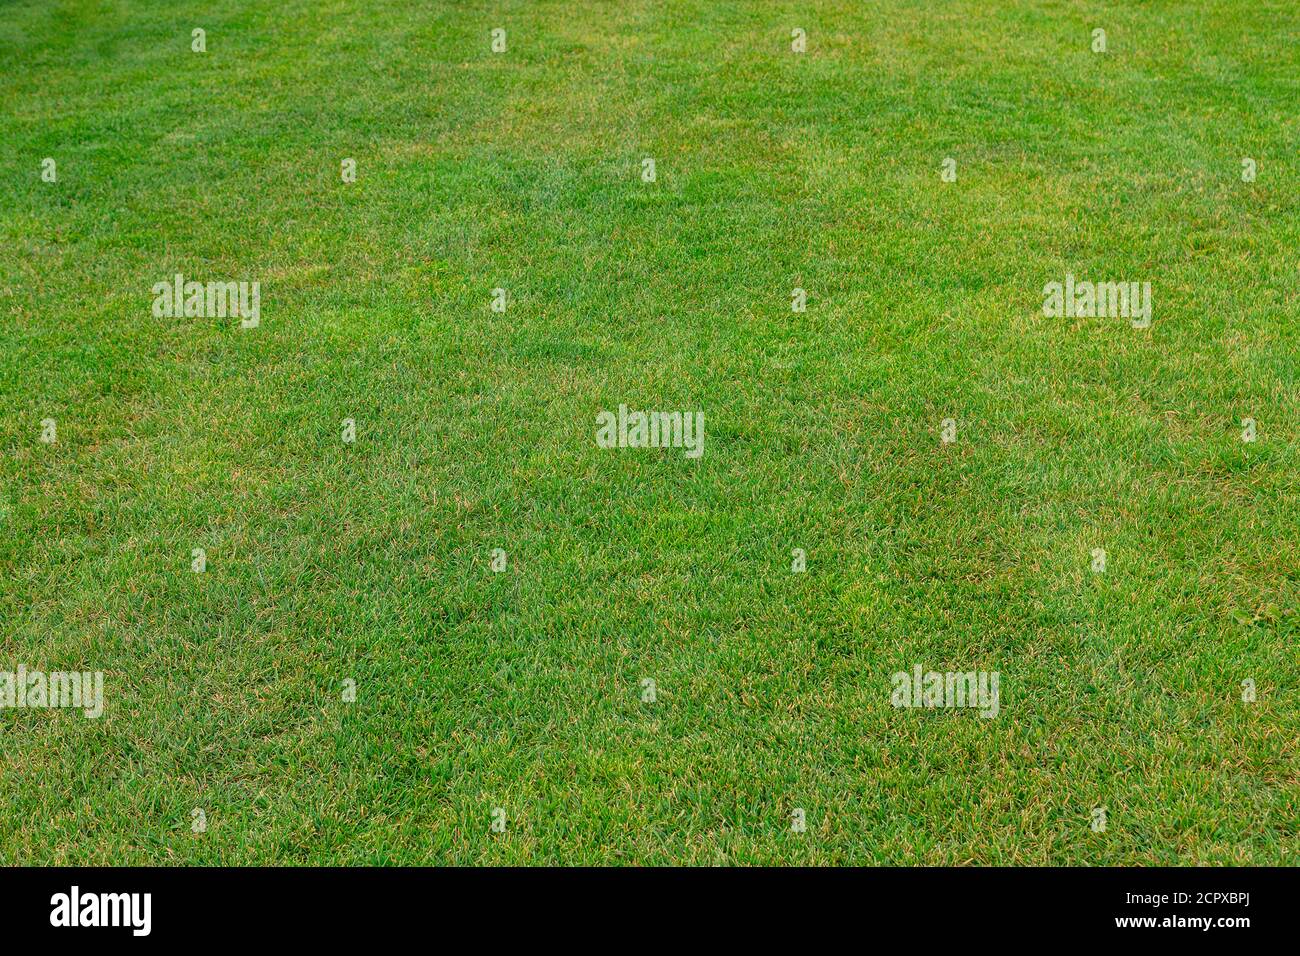 Fragment d'un parcours de golf avec herbe verte. Paysage rural Banque D'Images